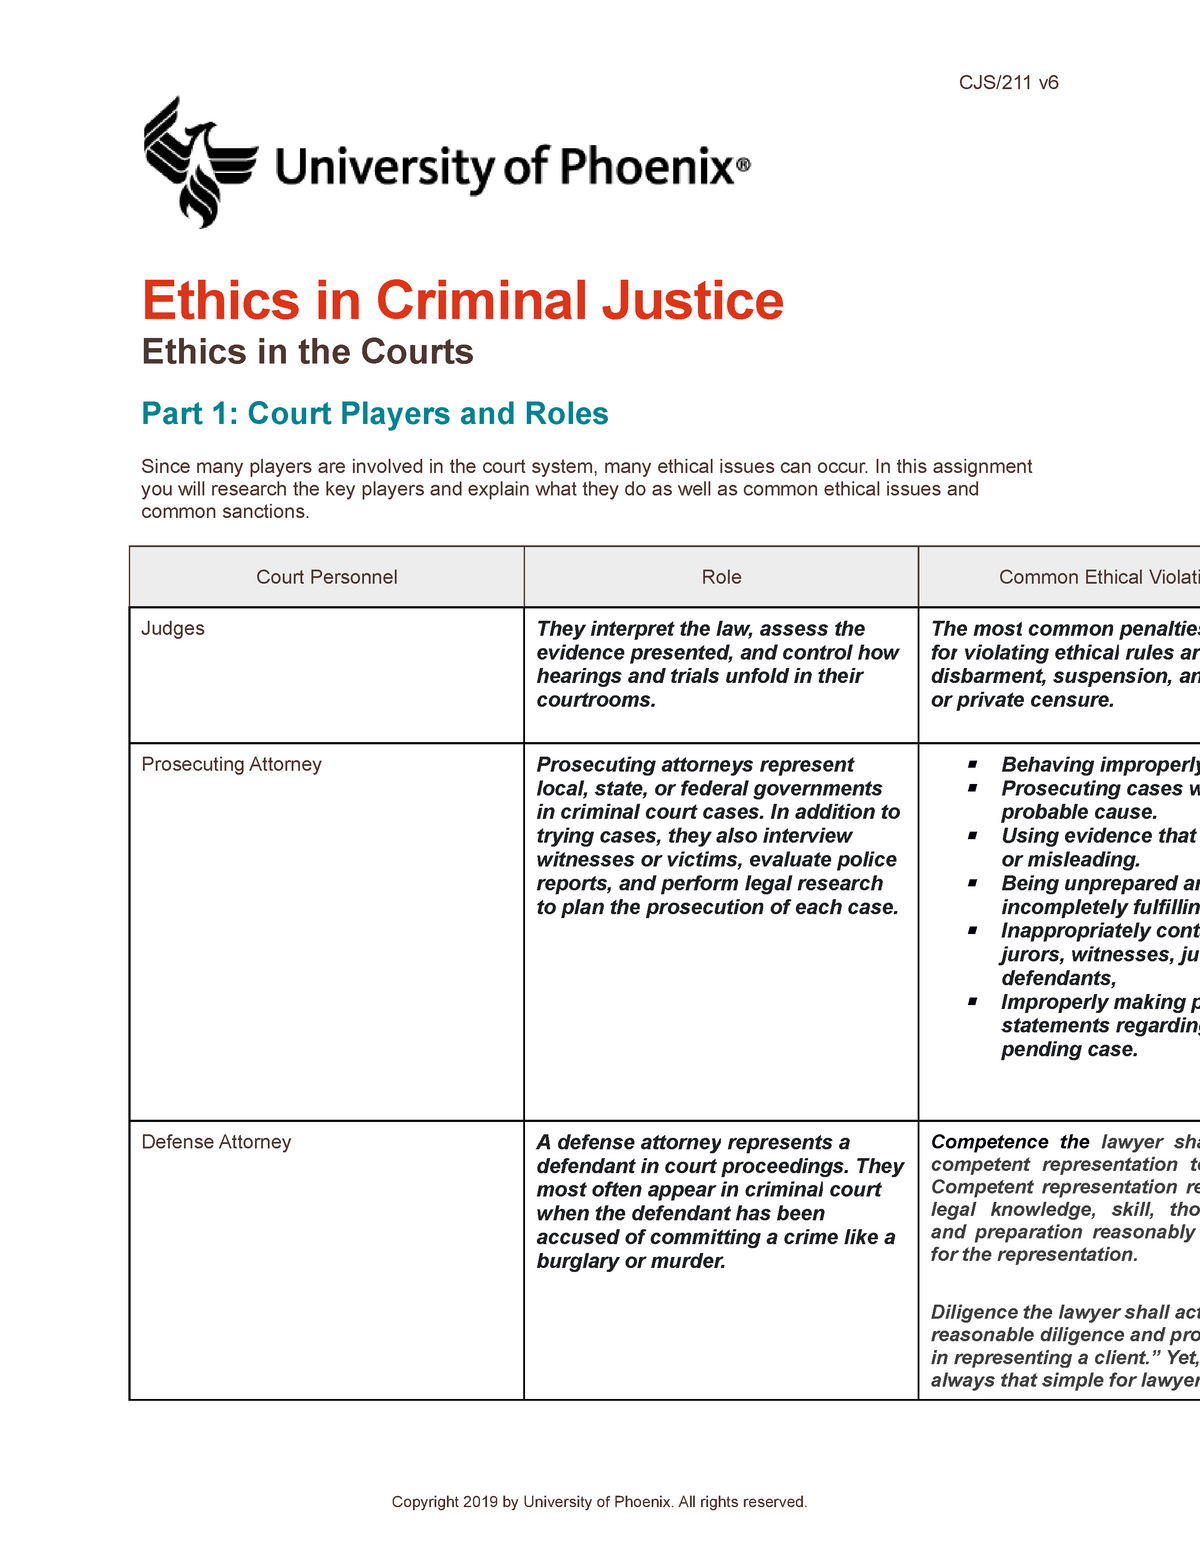 week3-cjs211-shanese-bennett-worksheet-cjs-211-v-ethics-in-criminal-justice-ethics-in-the